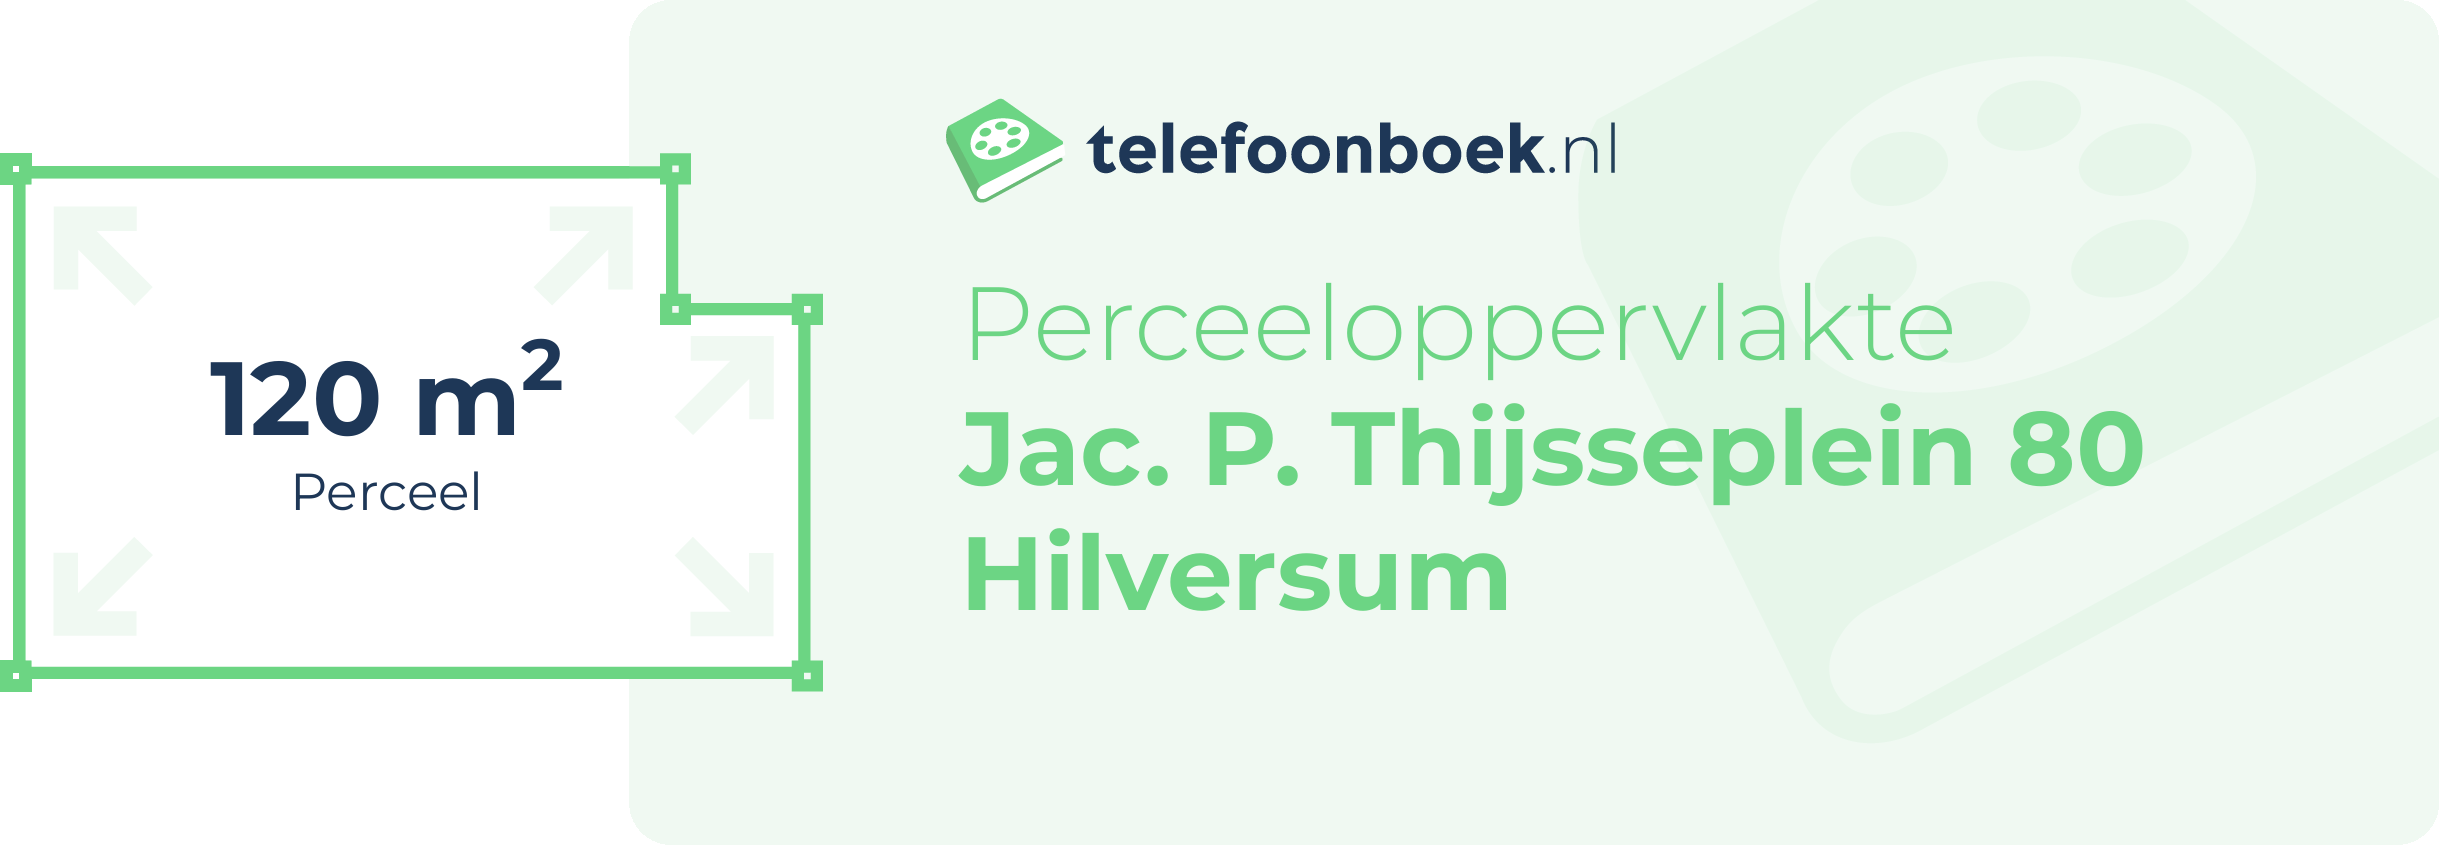 Perceeloppervlakte Jac. P. Thijsseplein 80 Hilversum